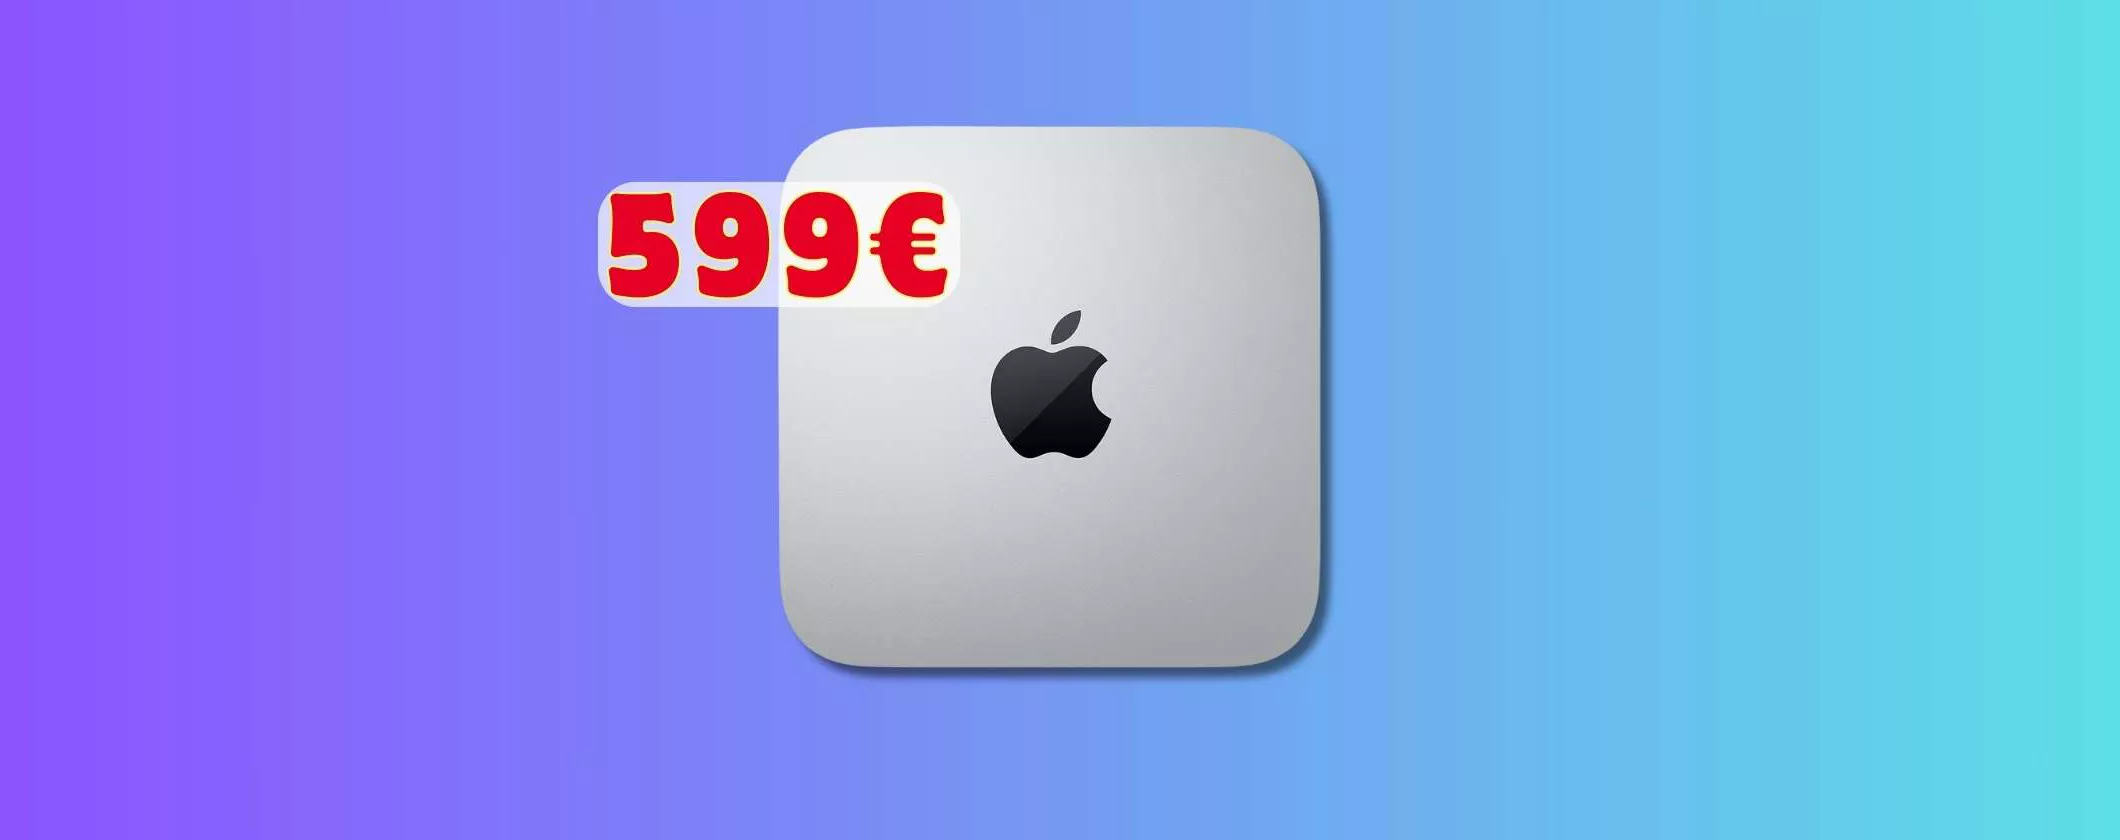 Mac Mini M1 a soli 599€: una FAVOLA su Amazon